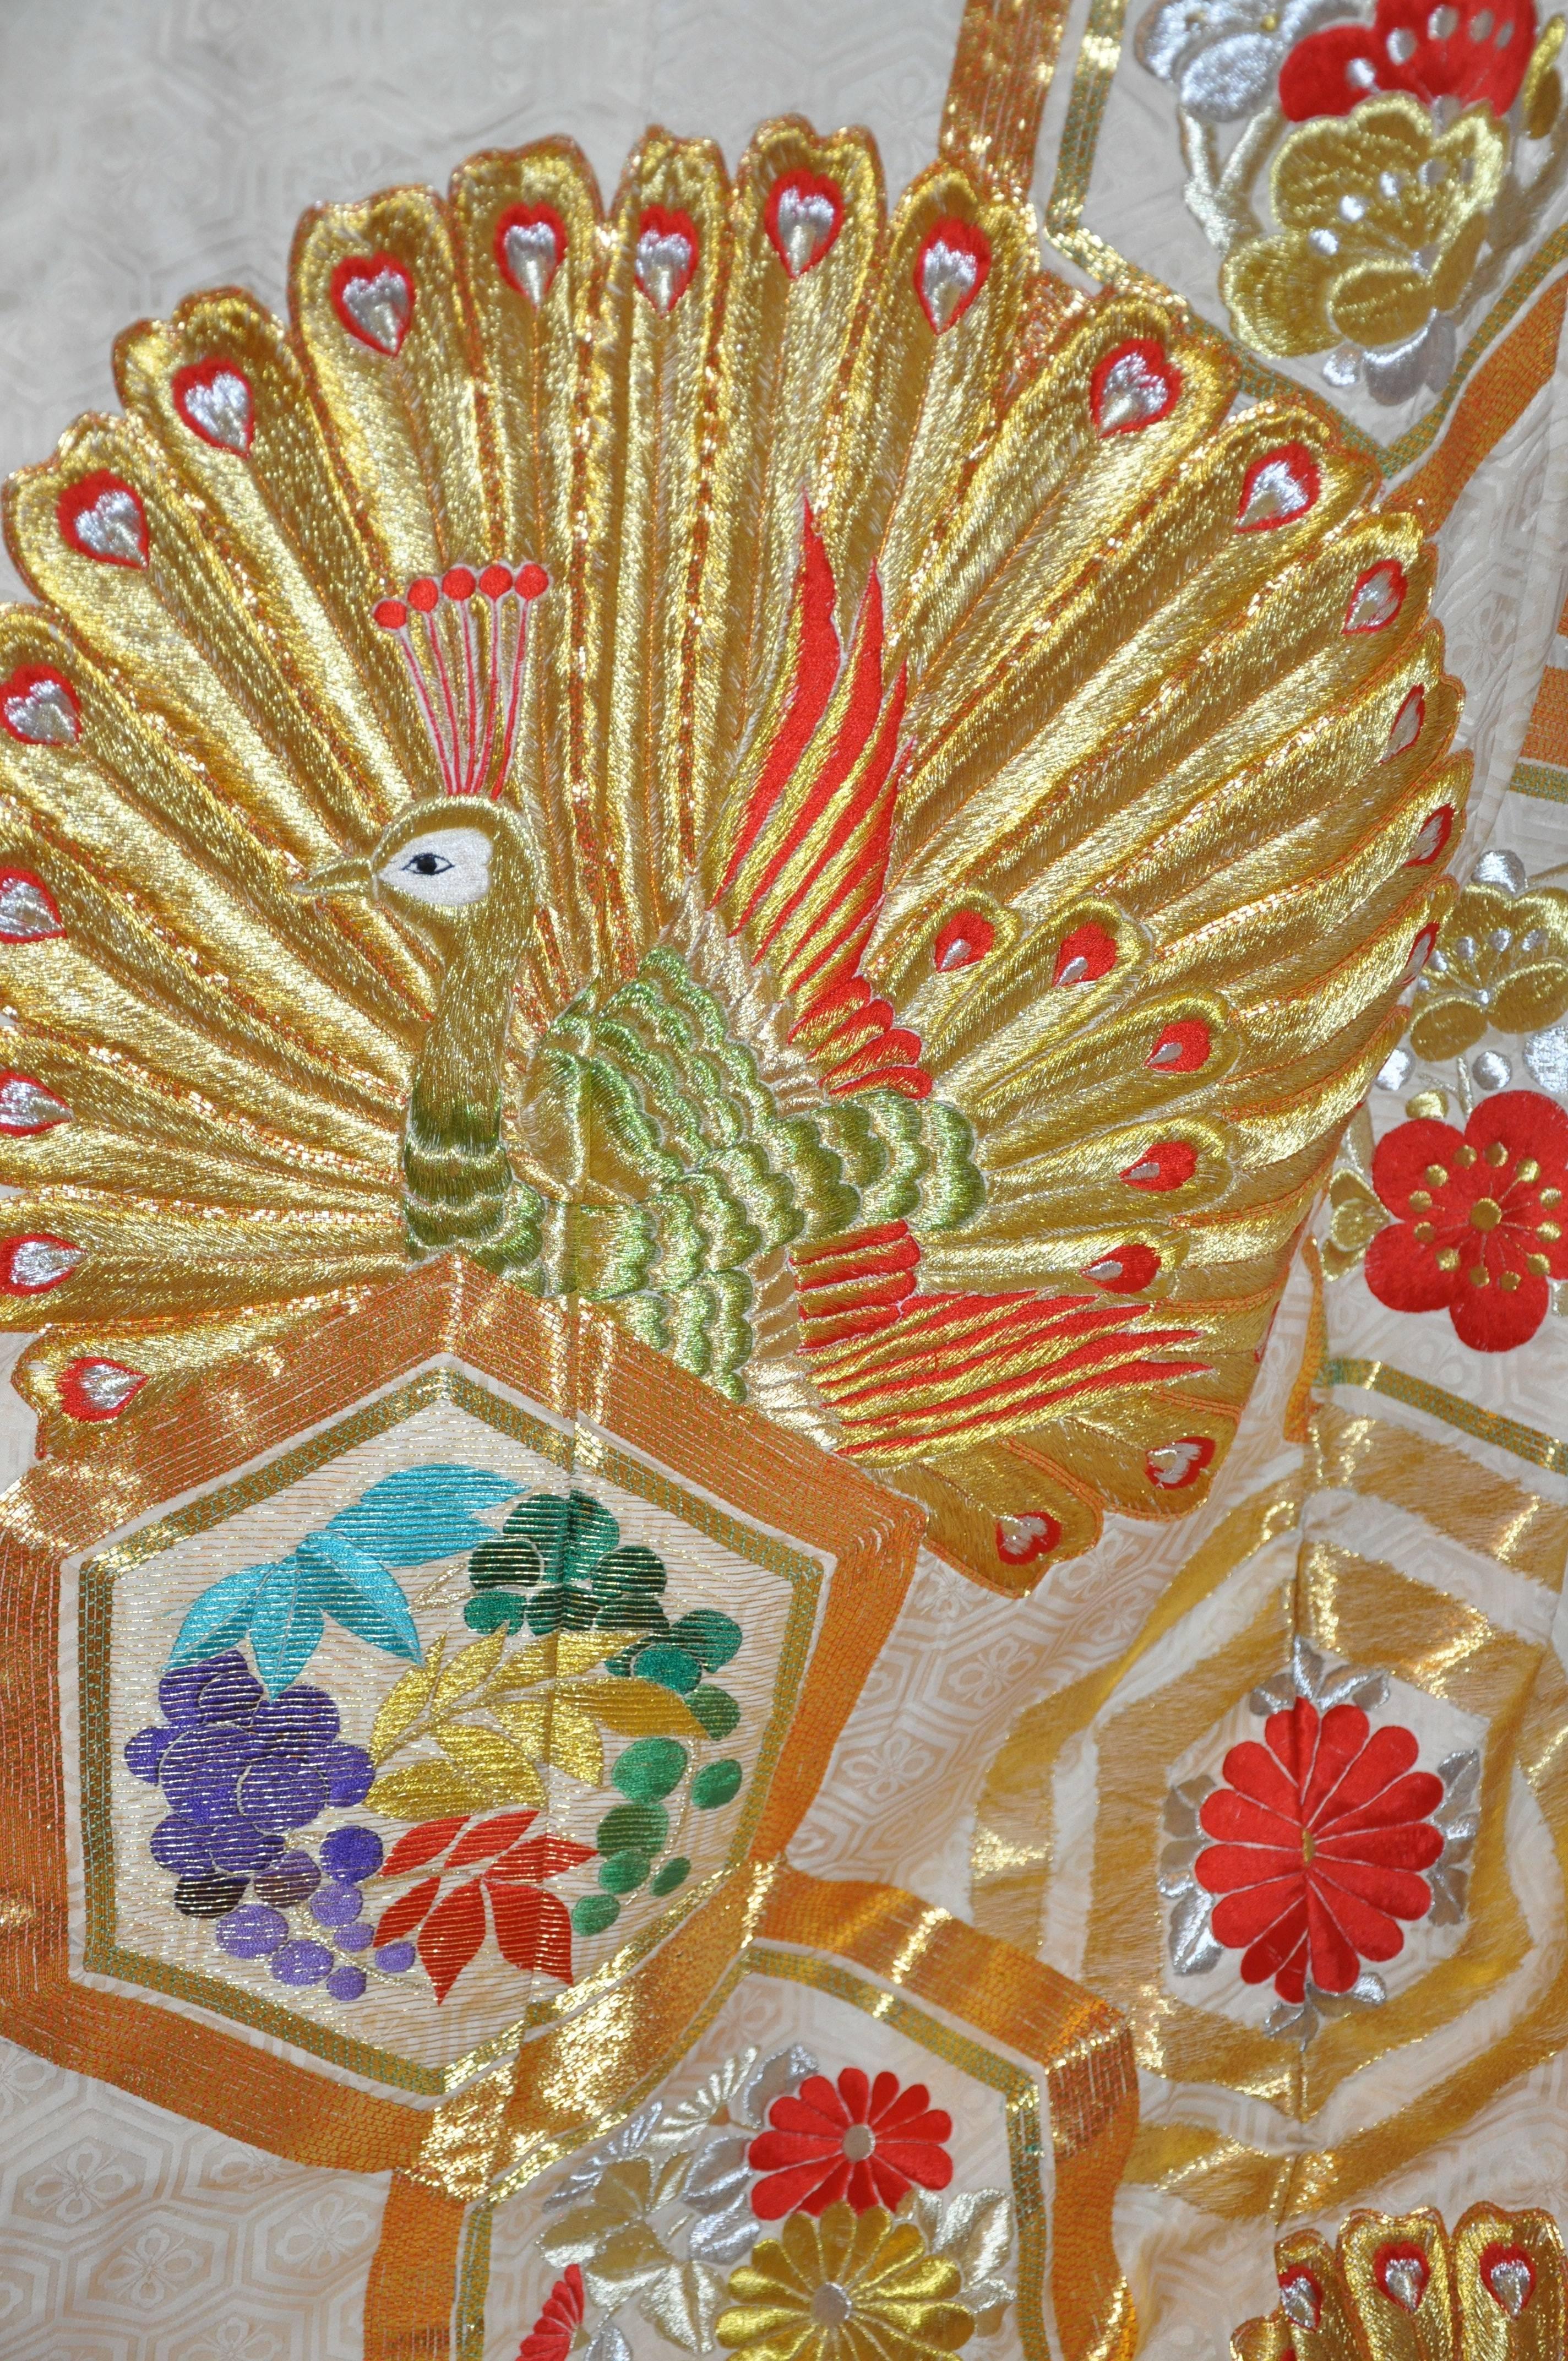       Merveilleusement détaillé avec les fenêtres de la pagode pleines de broderies florales multicolores, ainsi que les nombreux aspects de multicolores ainsi que de l'or et des nuances de fil lamé métallique mandarine brodés dans les paons en